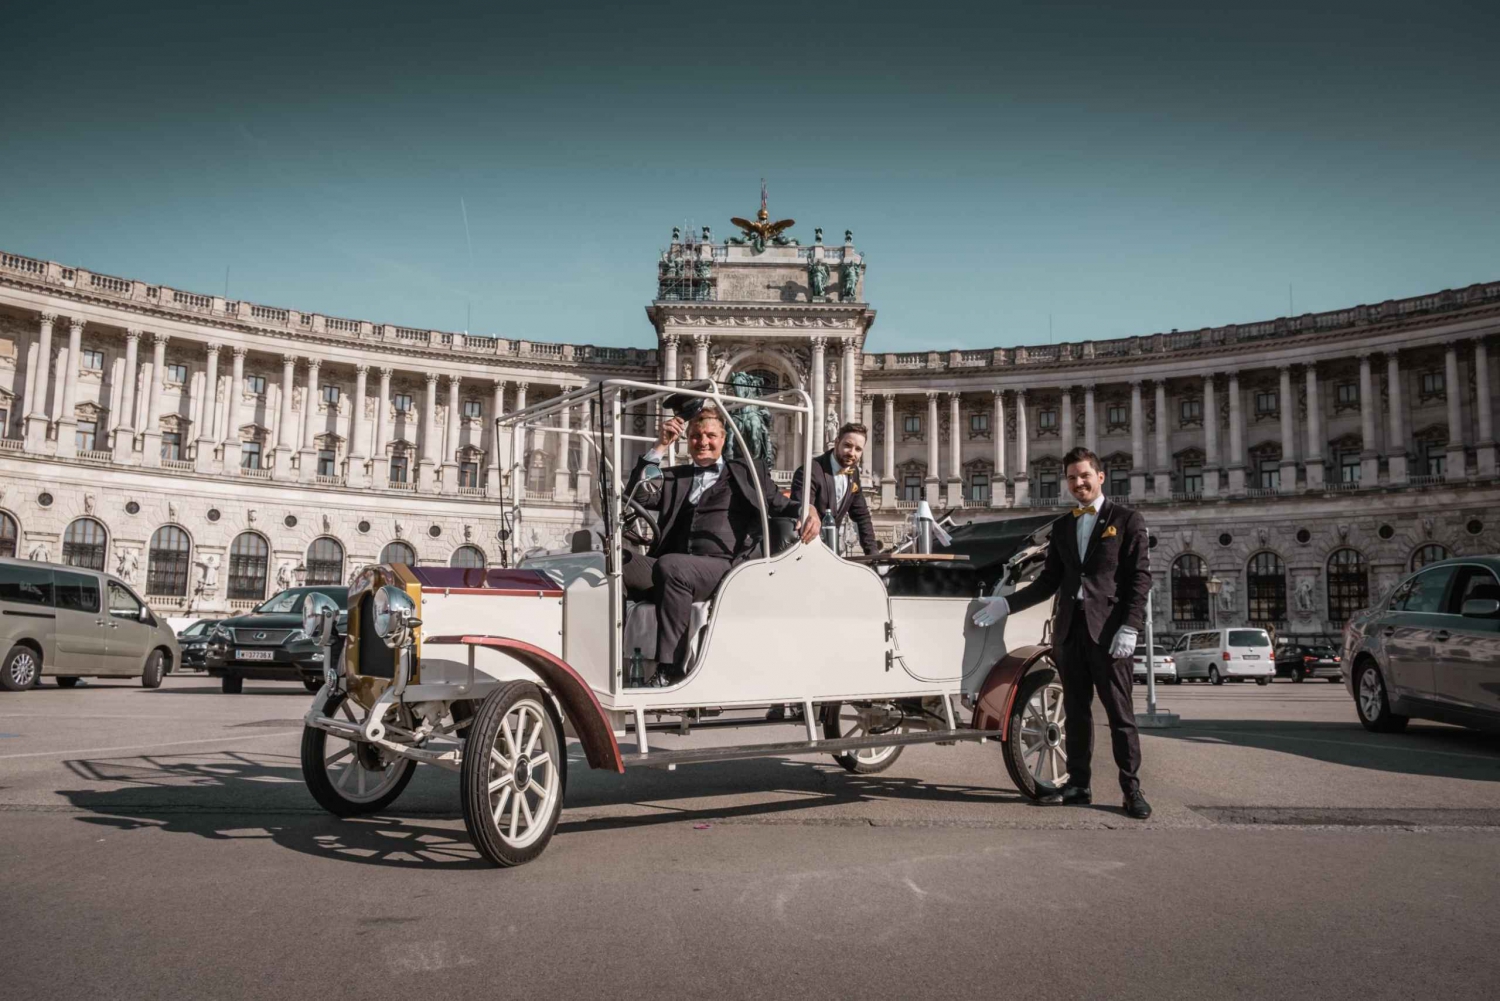 Viena: Passeio turístico pela cidade em um carro antigo elétrico